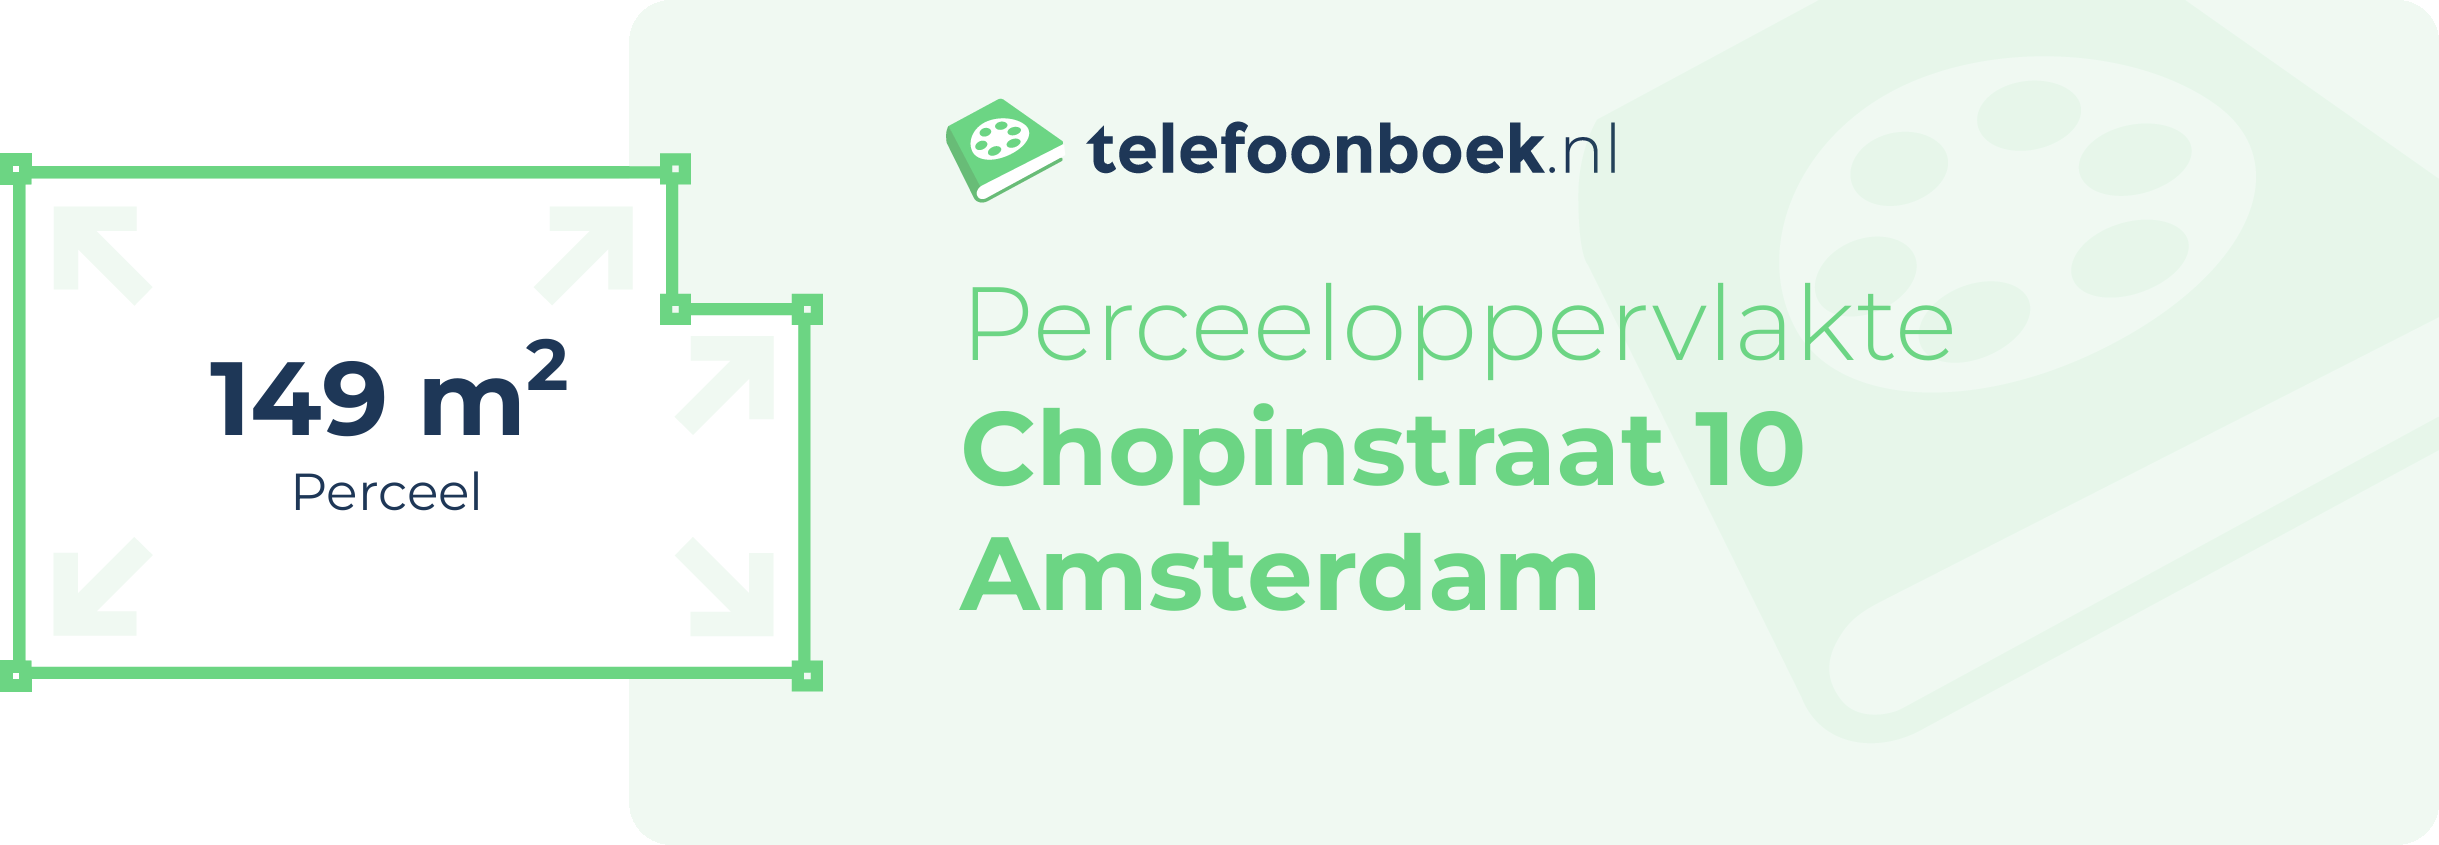 Perceeloppervlakte Chopinstraat 10 Amsterdam